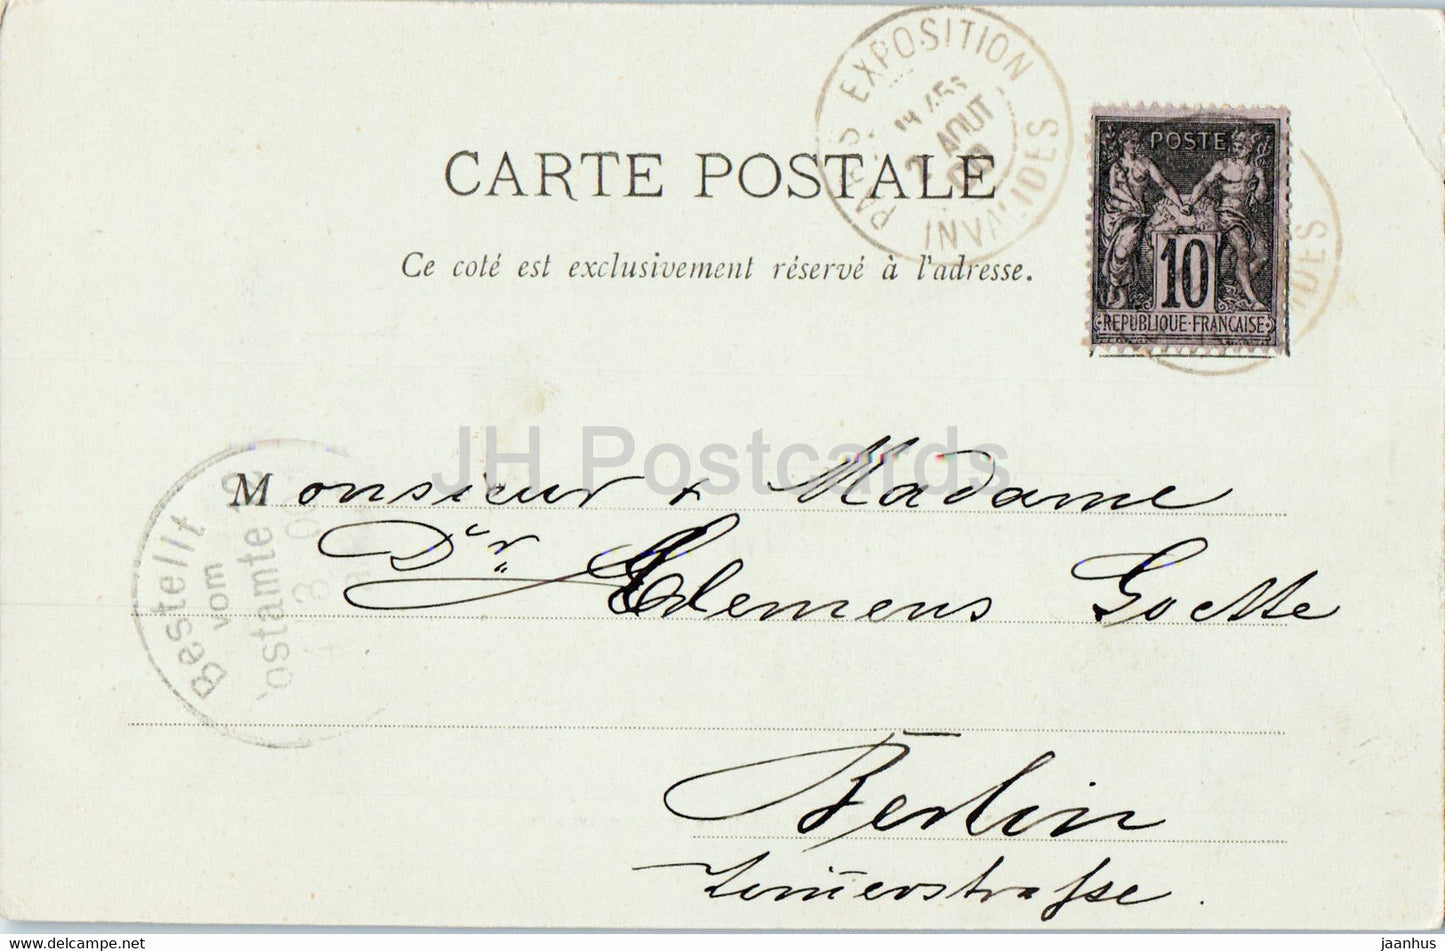 Paris - Exposition de 1900  - La Porte Monumentale - old postcard - 1900 - France - used